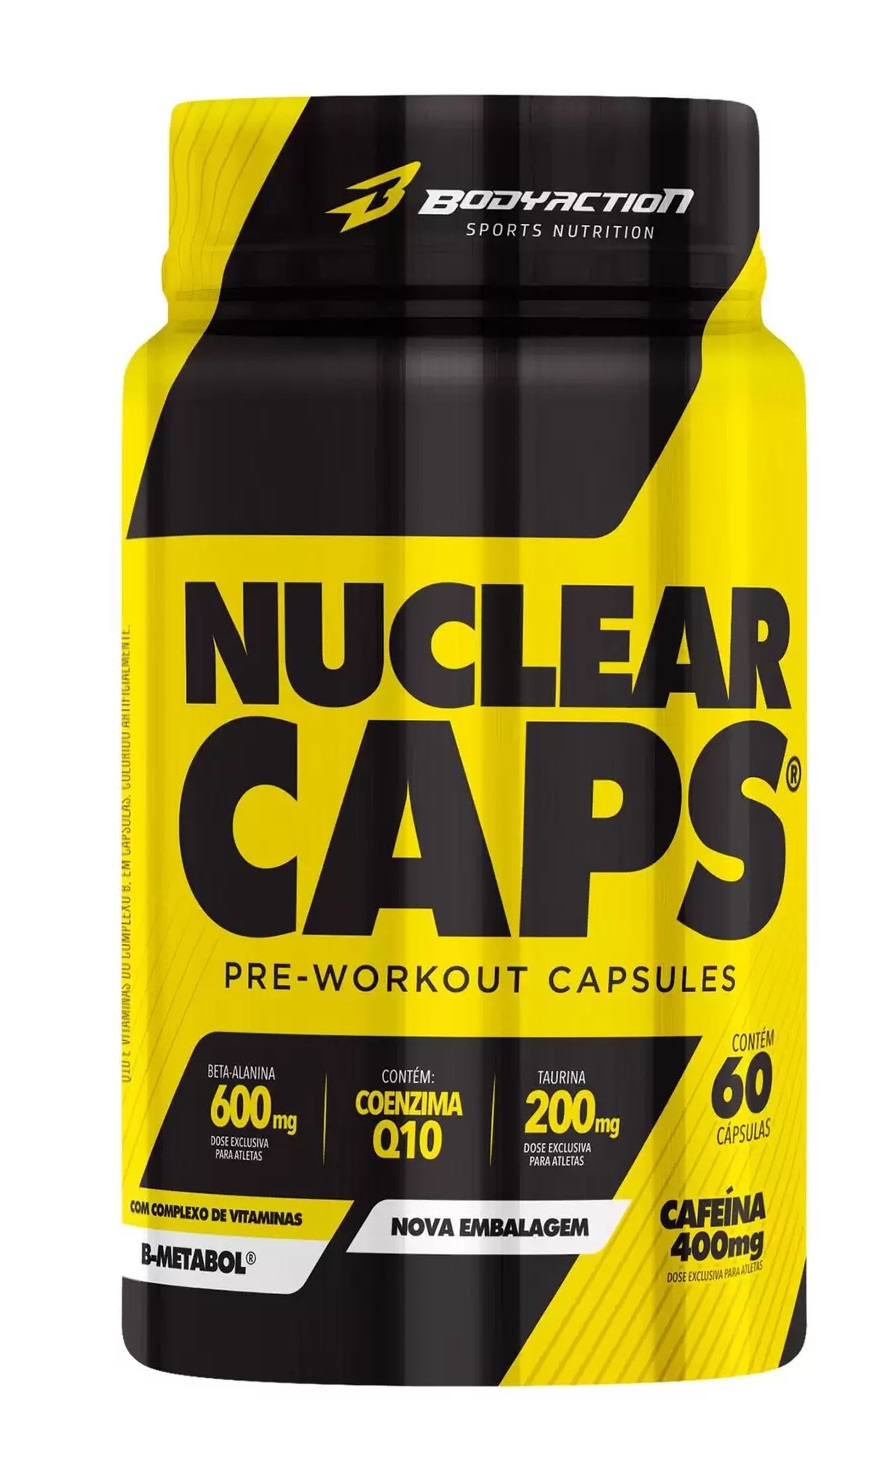 Nuclear Caps (Pré-Treino) Body Action - 60 caps